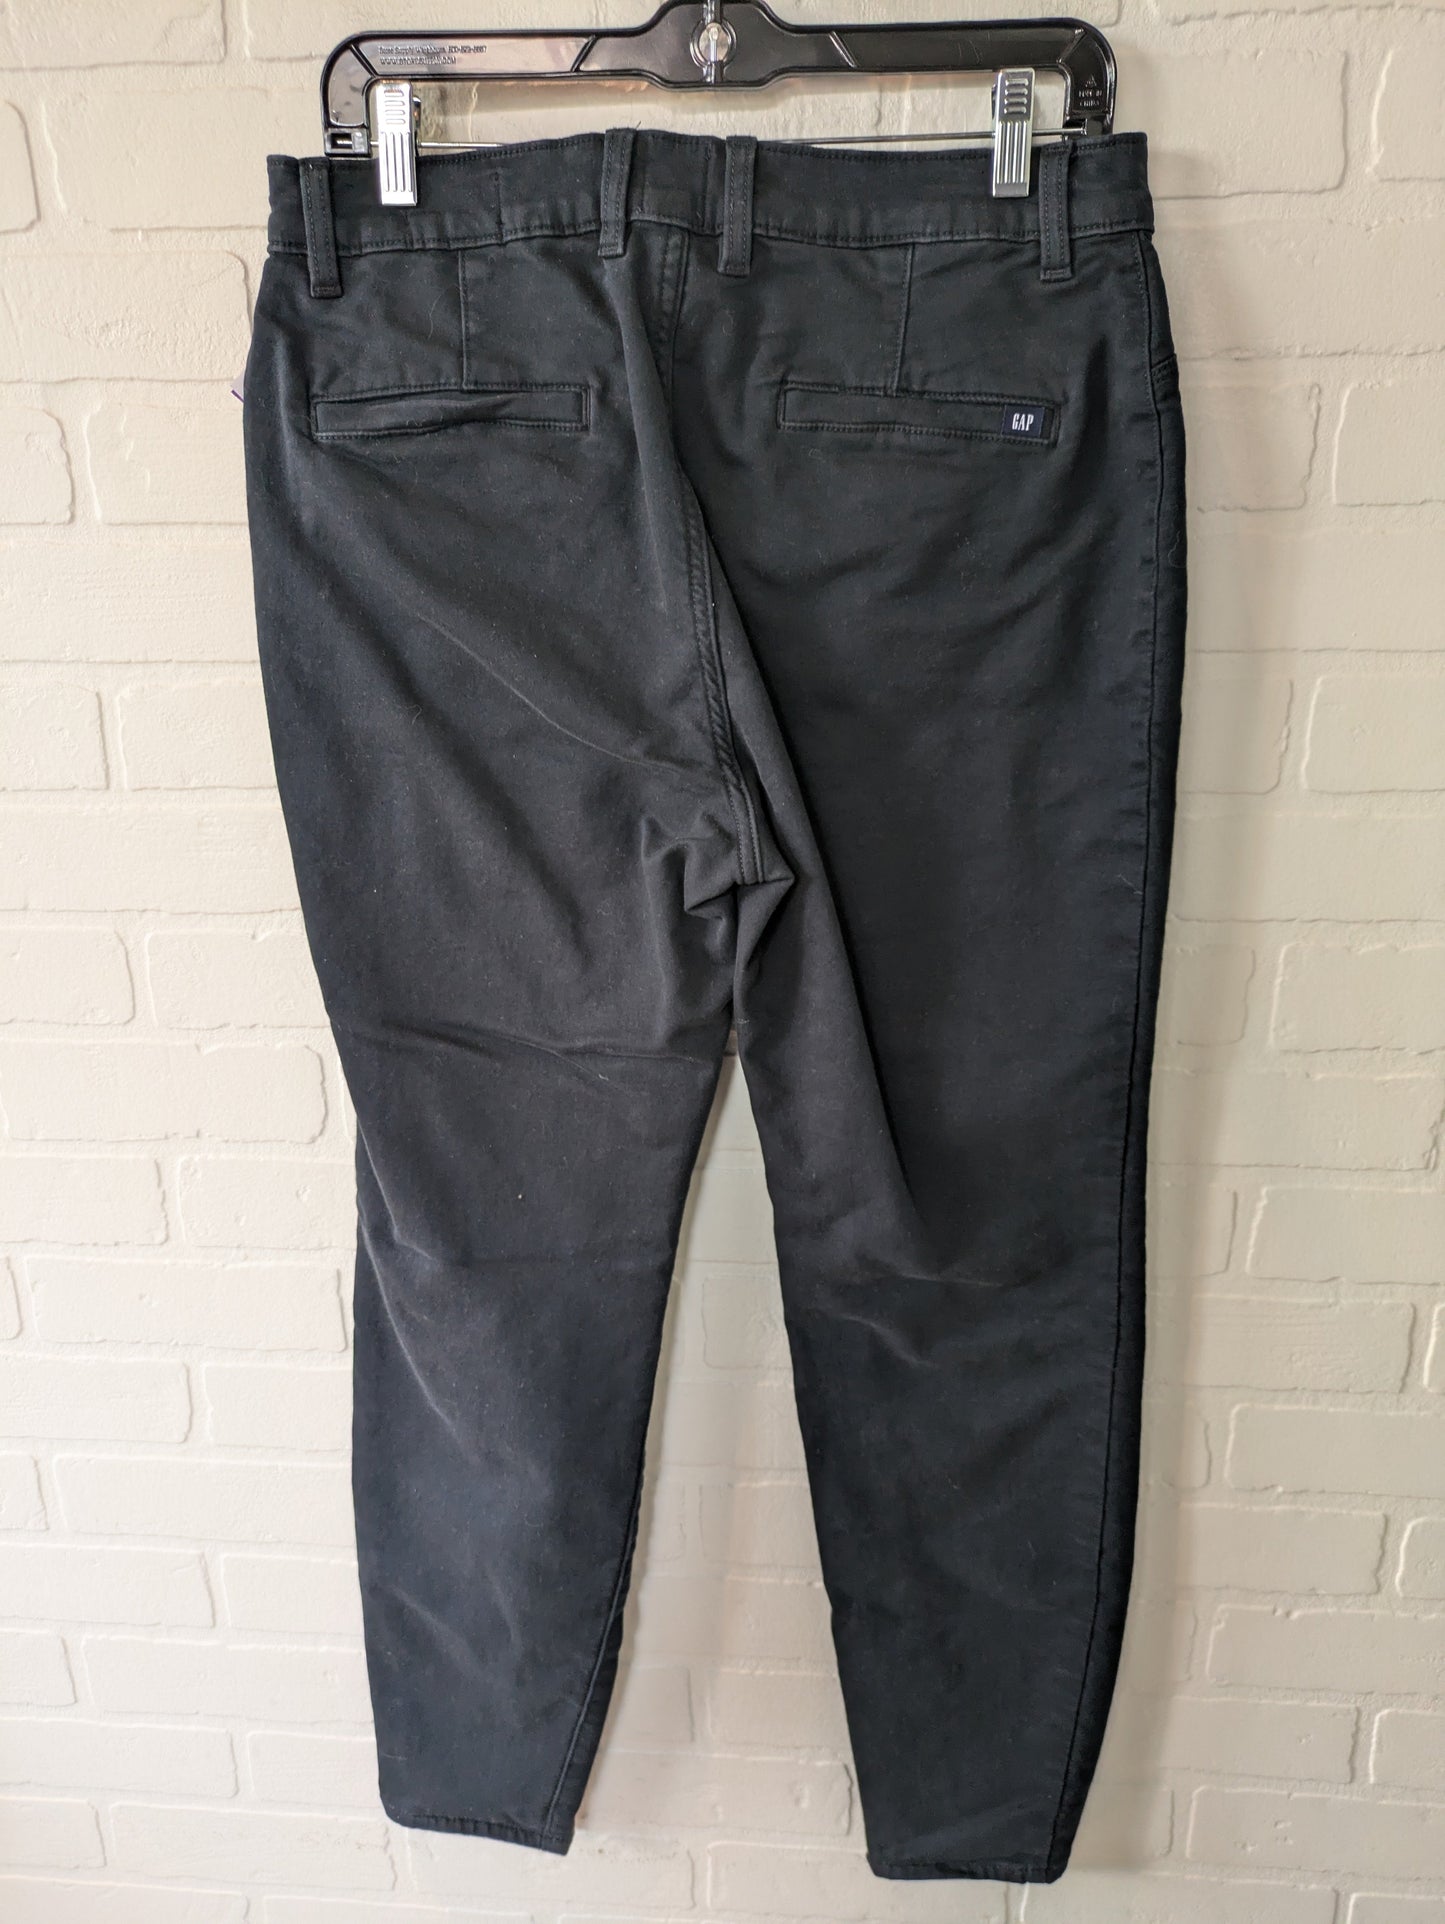 Black Denim Jeans Skinny Gap, Size 12